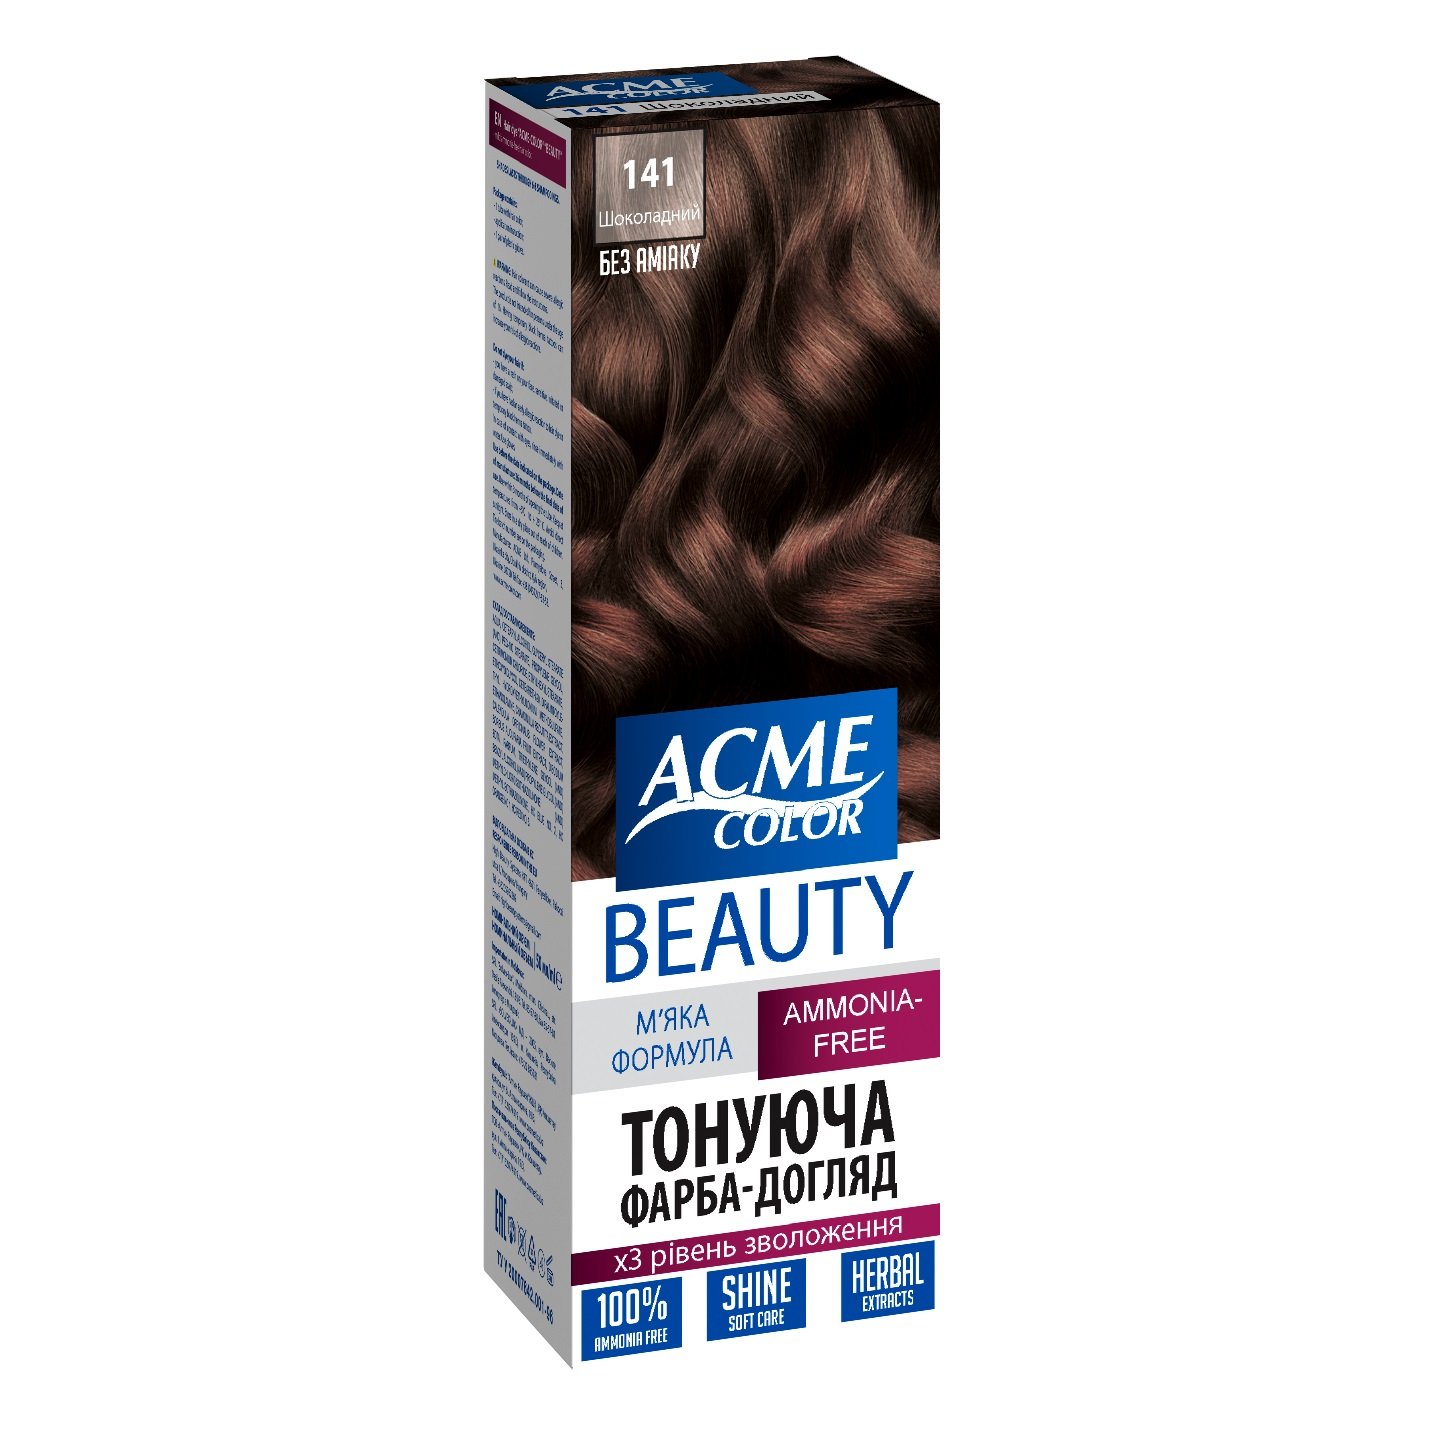 Гель-фарба для волосся Acme-color Beauty, відтінок 141 (Шоколадний), 69 г - фото 1